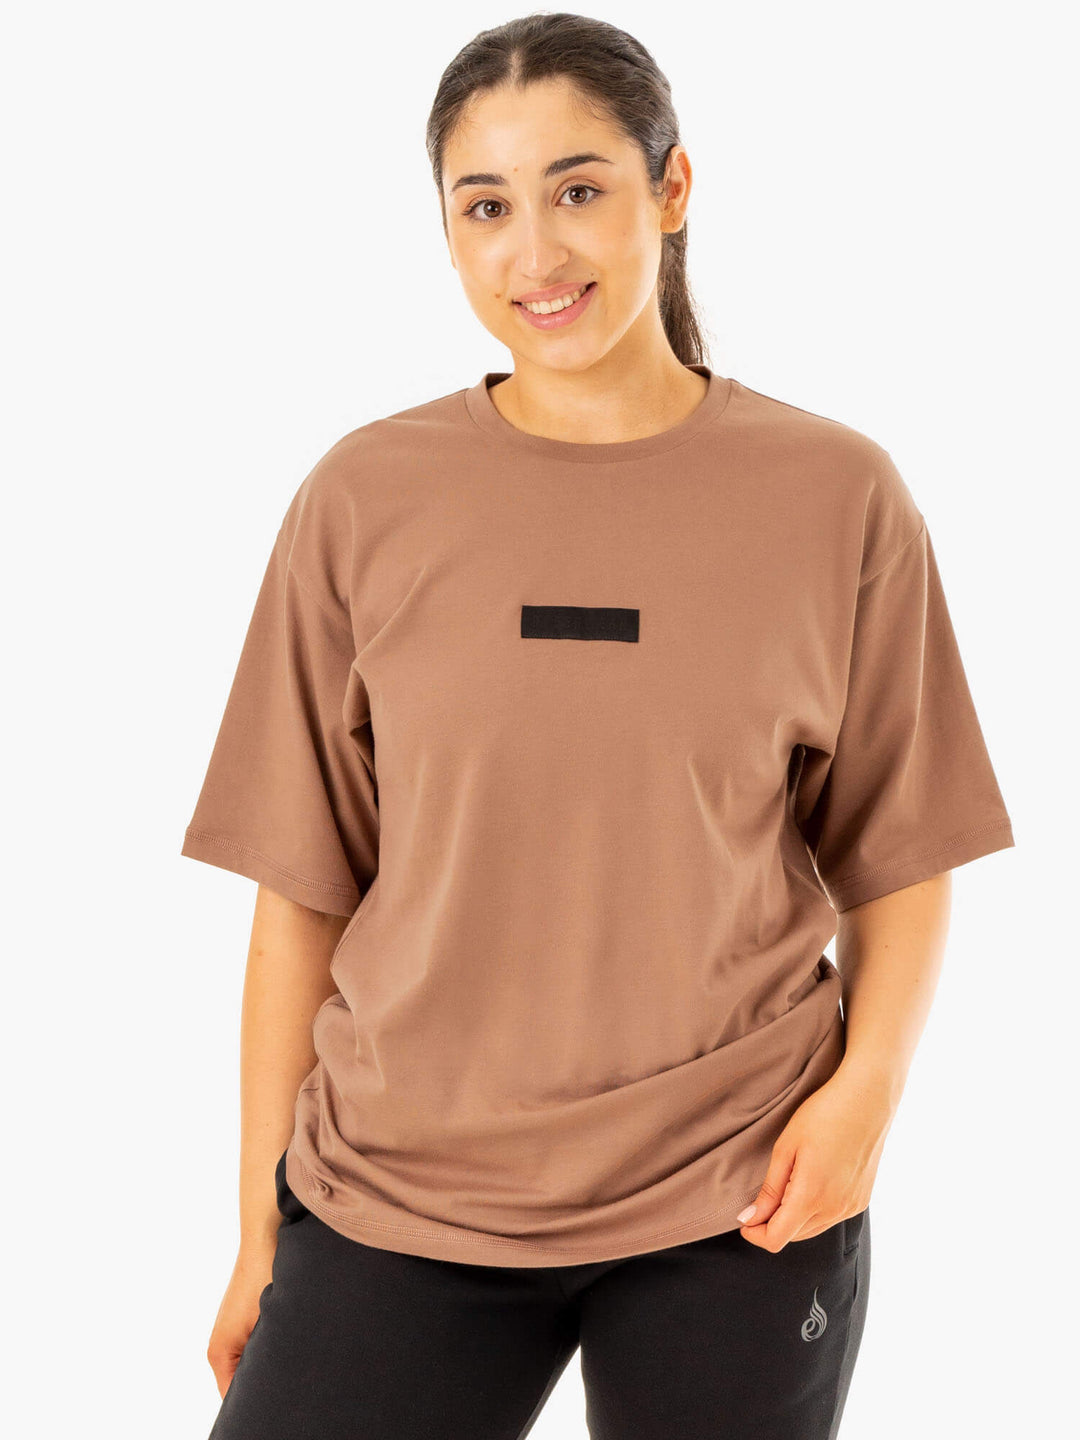 Unisex Oversized T-Shirt - Mocha Clothing Ryderwear 